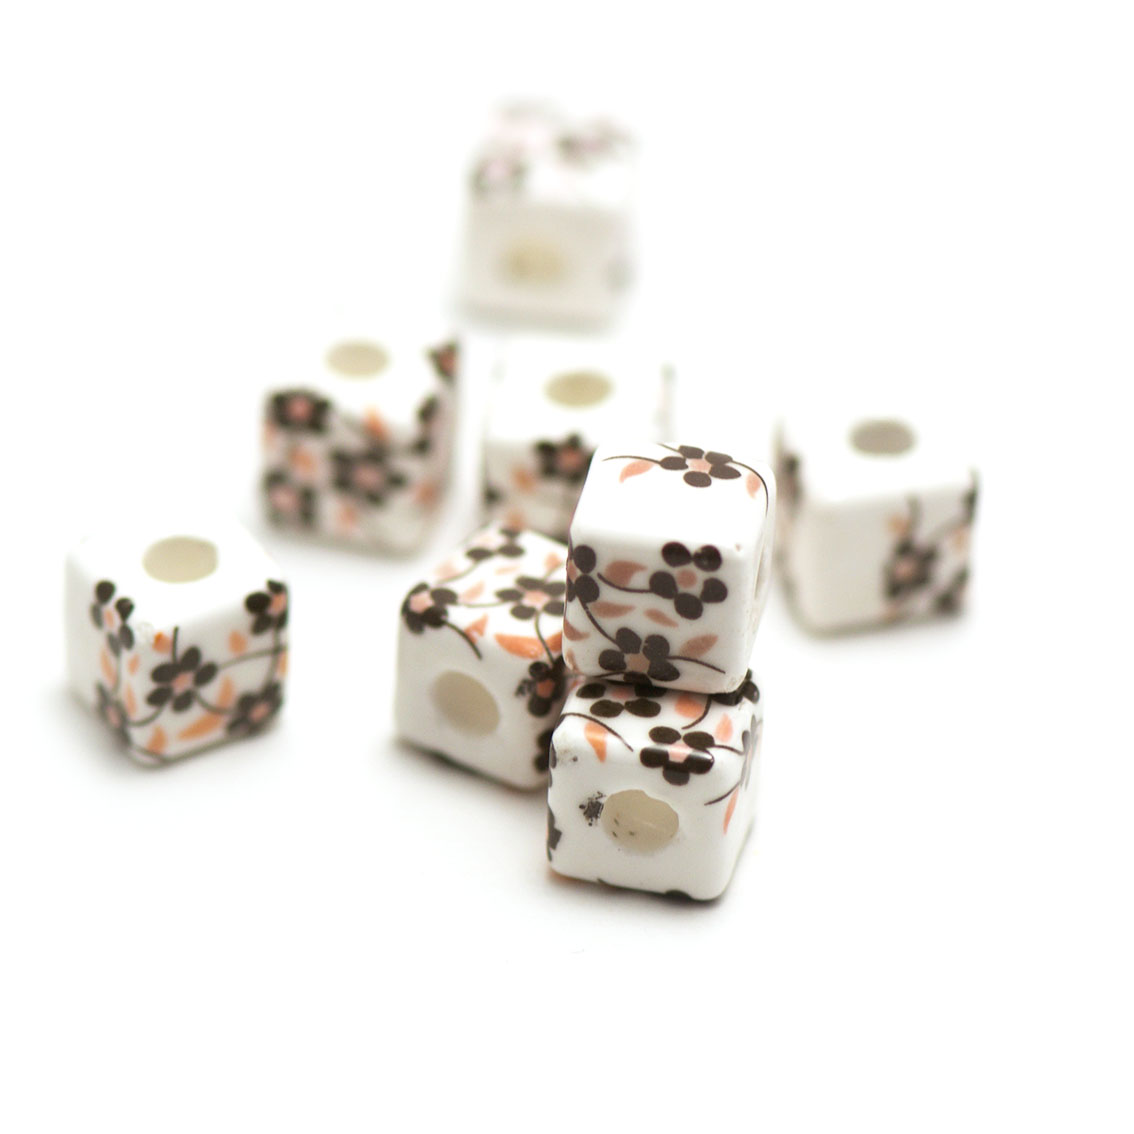 10 perles porcelaine cube fleur11 x11 mm,noir orange sur fond blanc